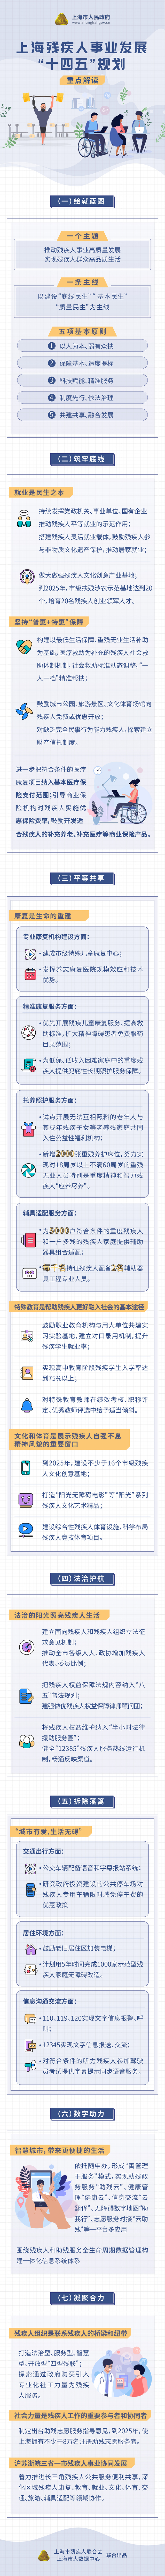 《上海残疾人事业发展“十四五”规划》重点图解.jpg